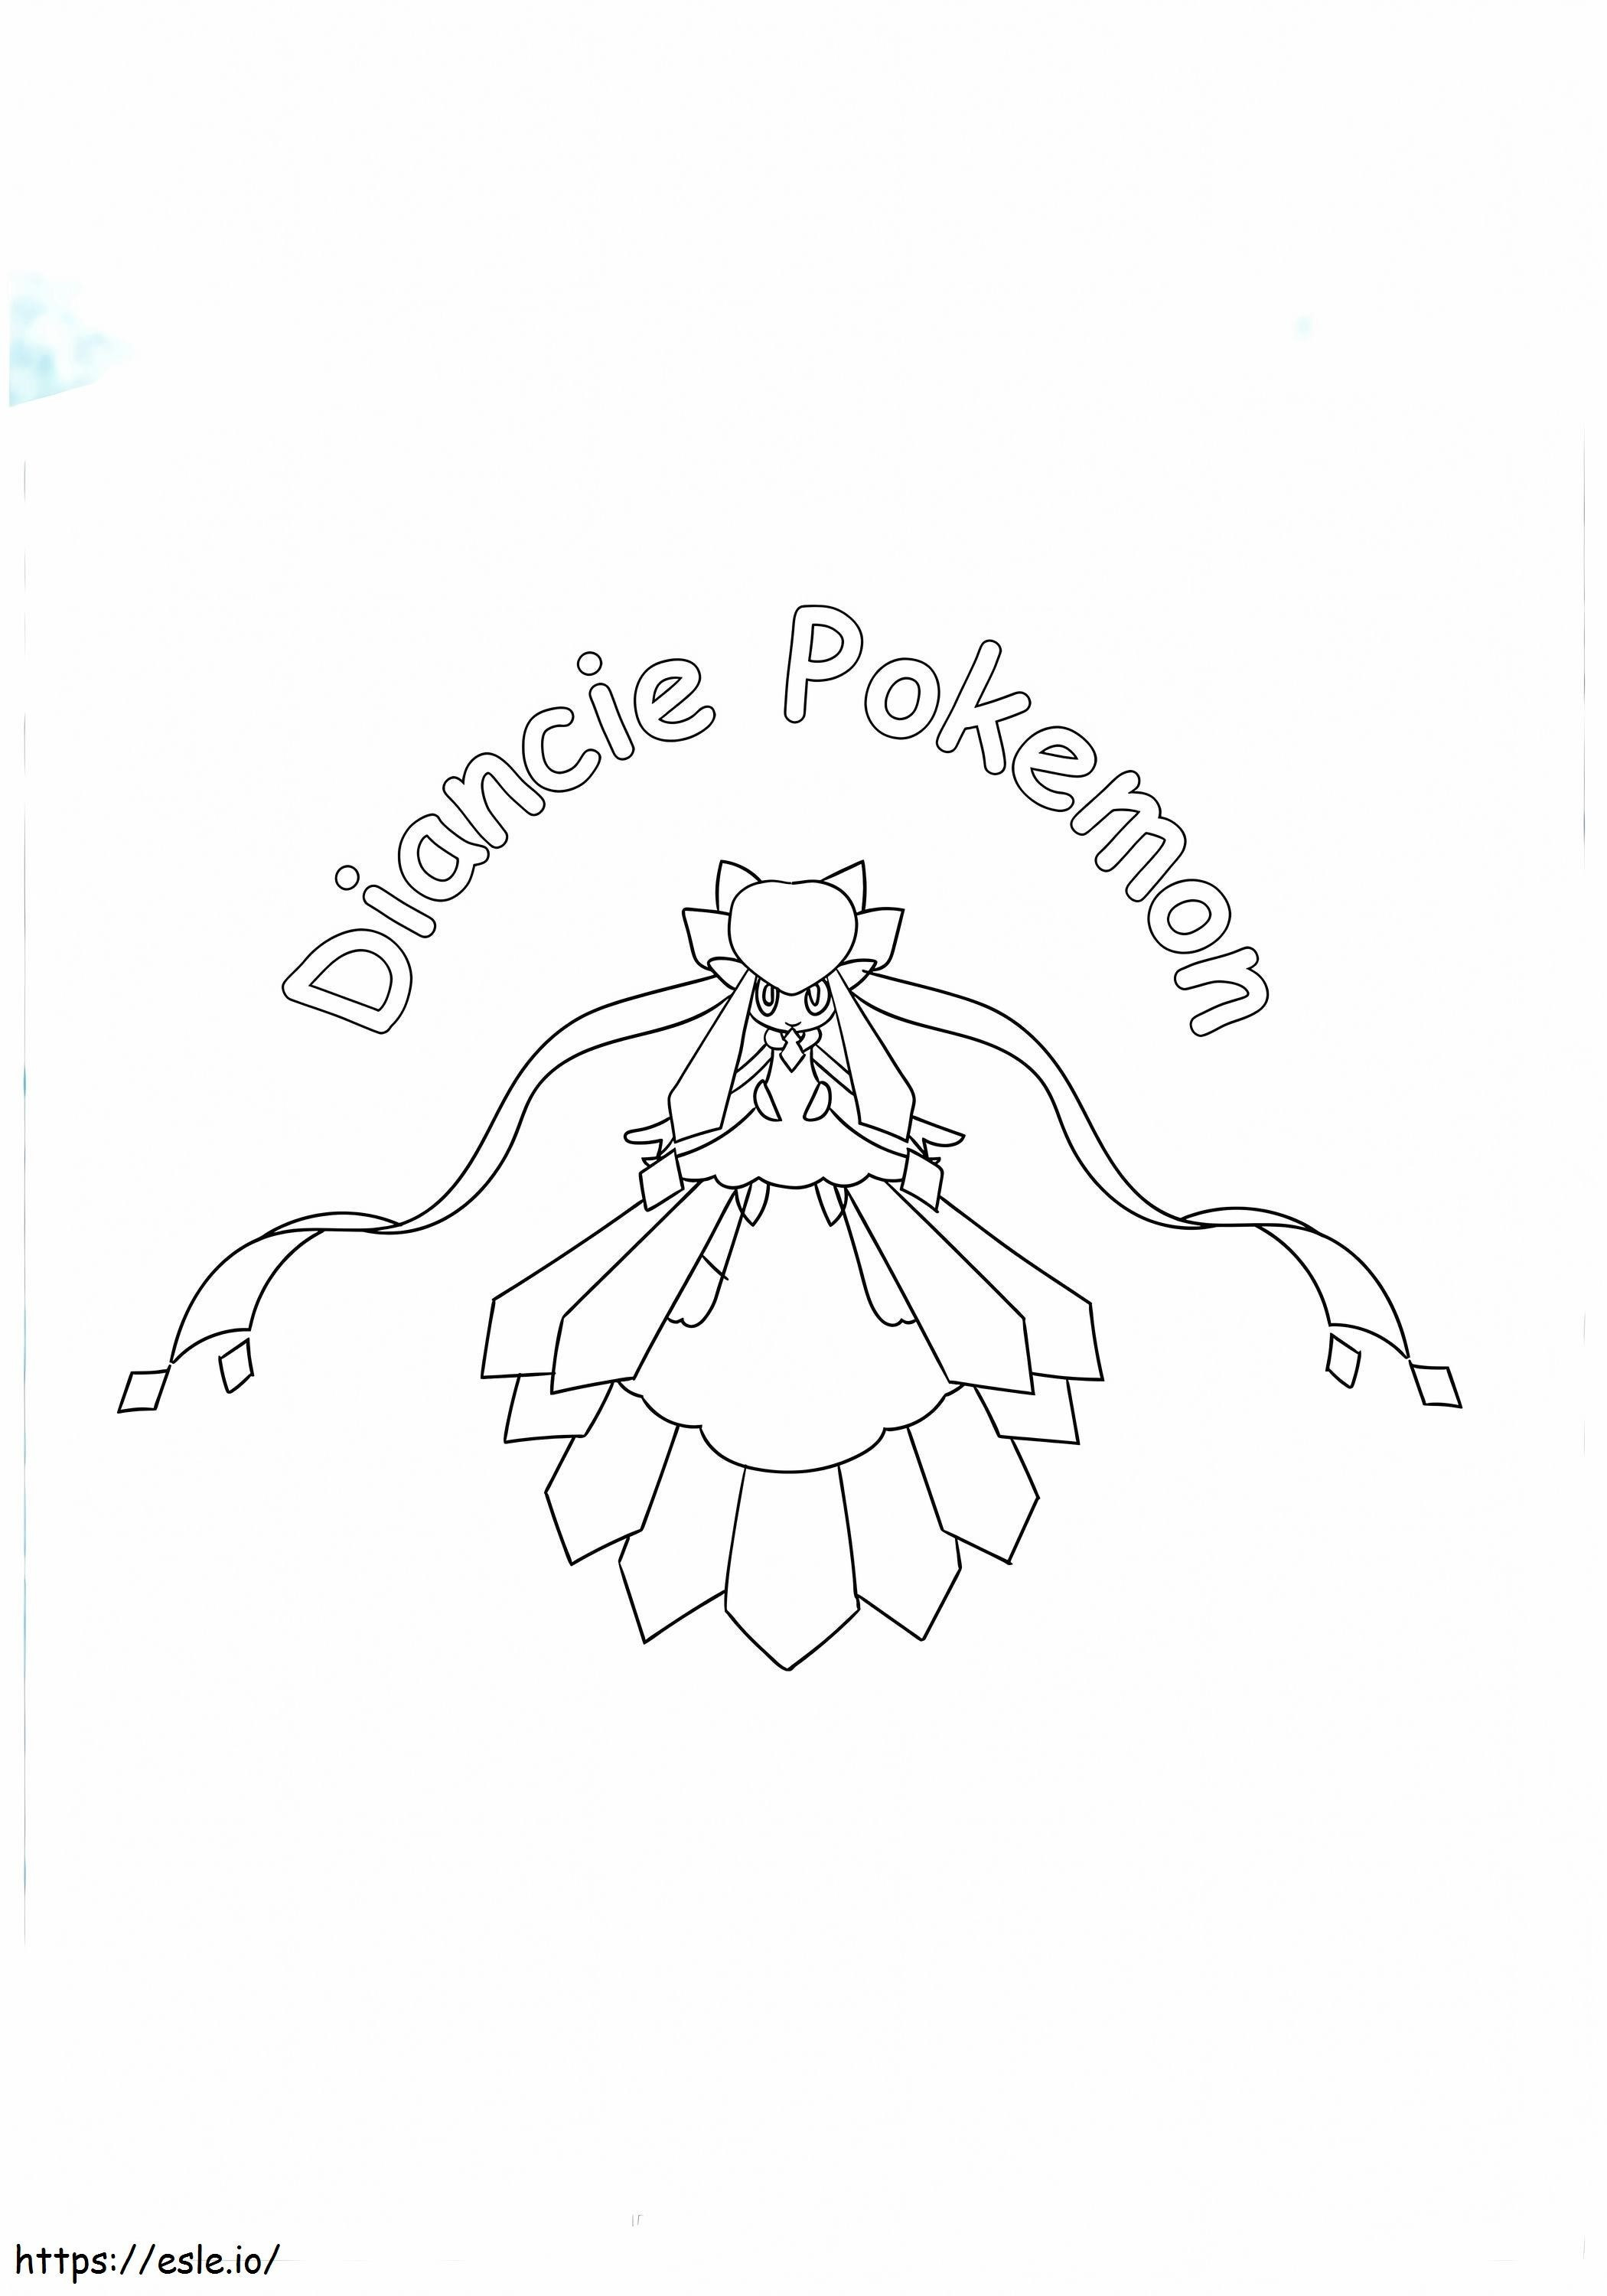  Diancie Pokemon 17 Copia A4 para colorear